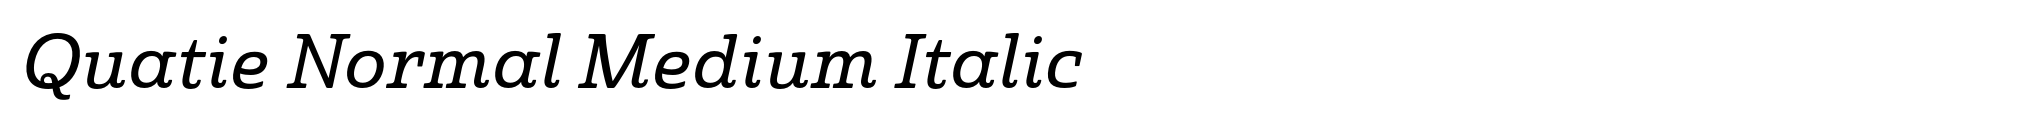 Quatie Normal Medium Italic image